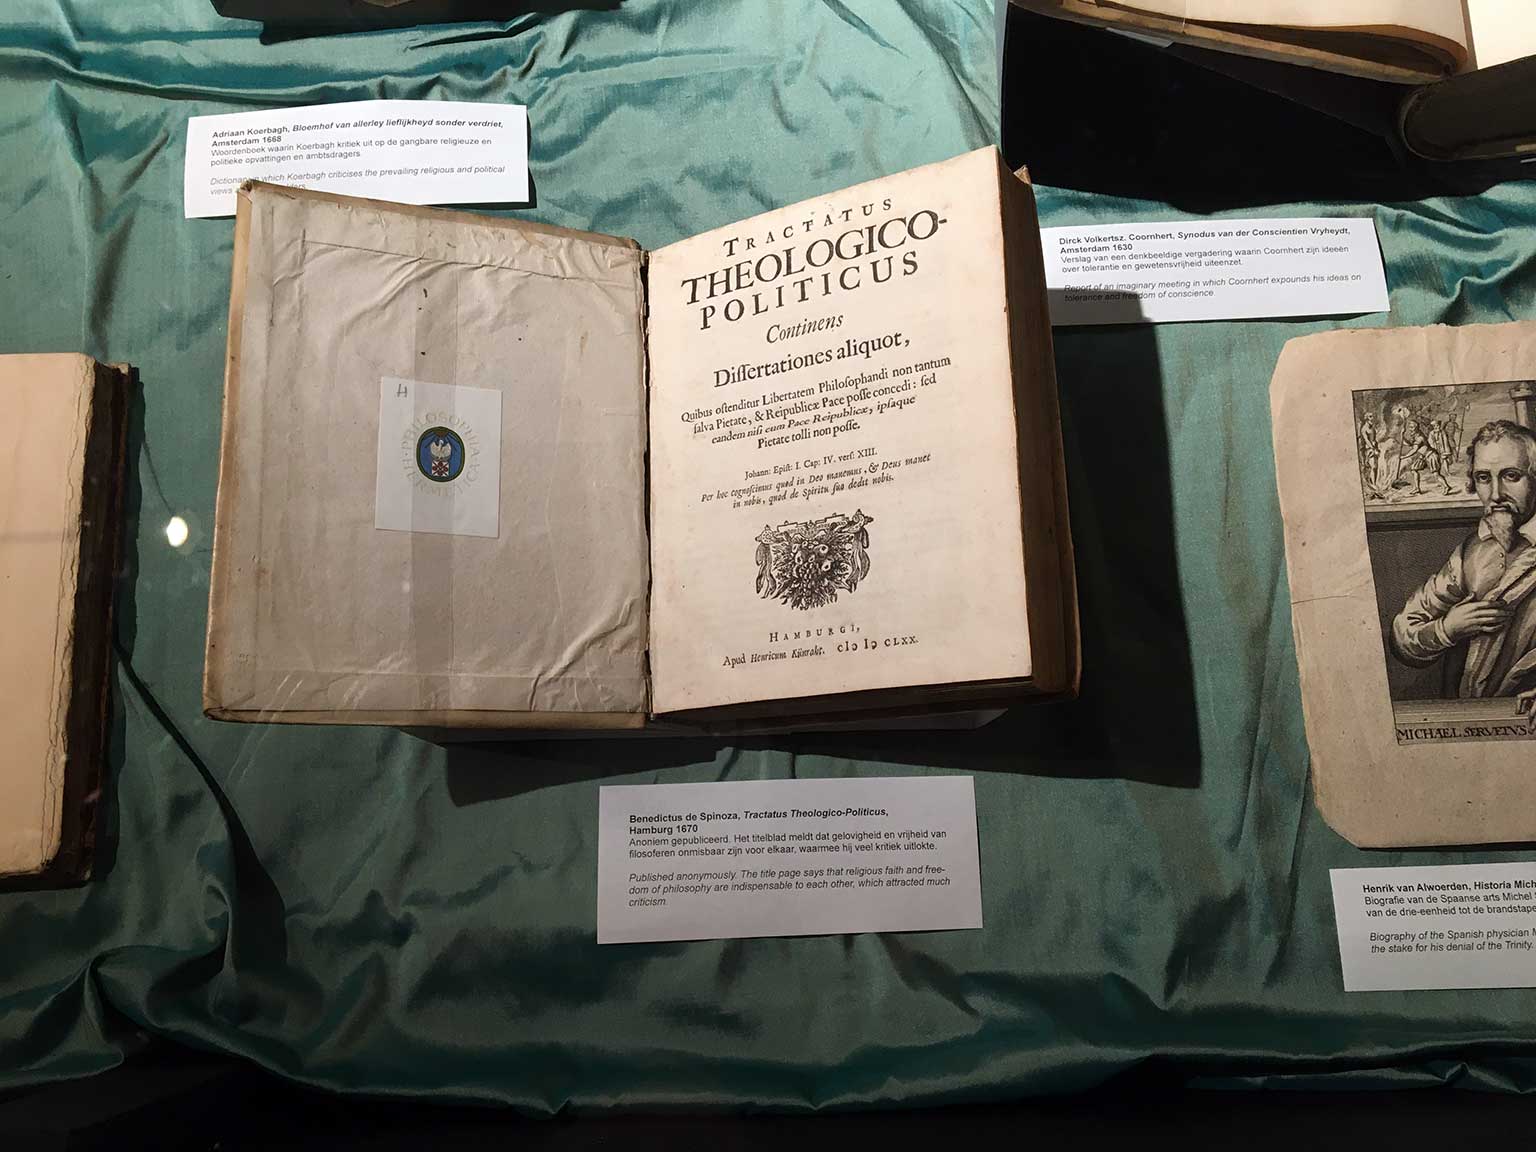 Boek Tractatus Theologico-Politicus van Benedictus de Spinoza uit 1670